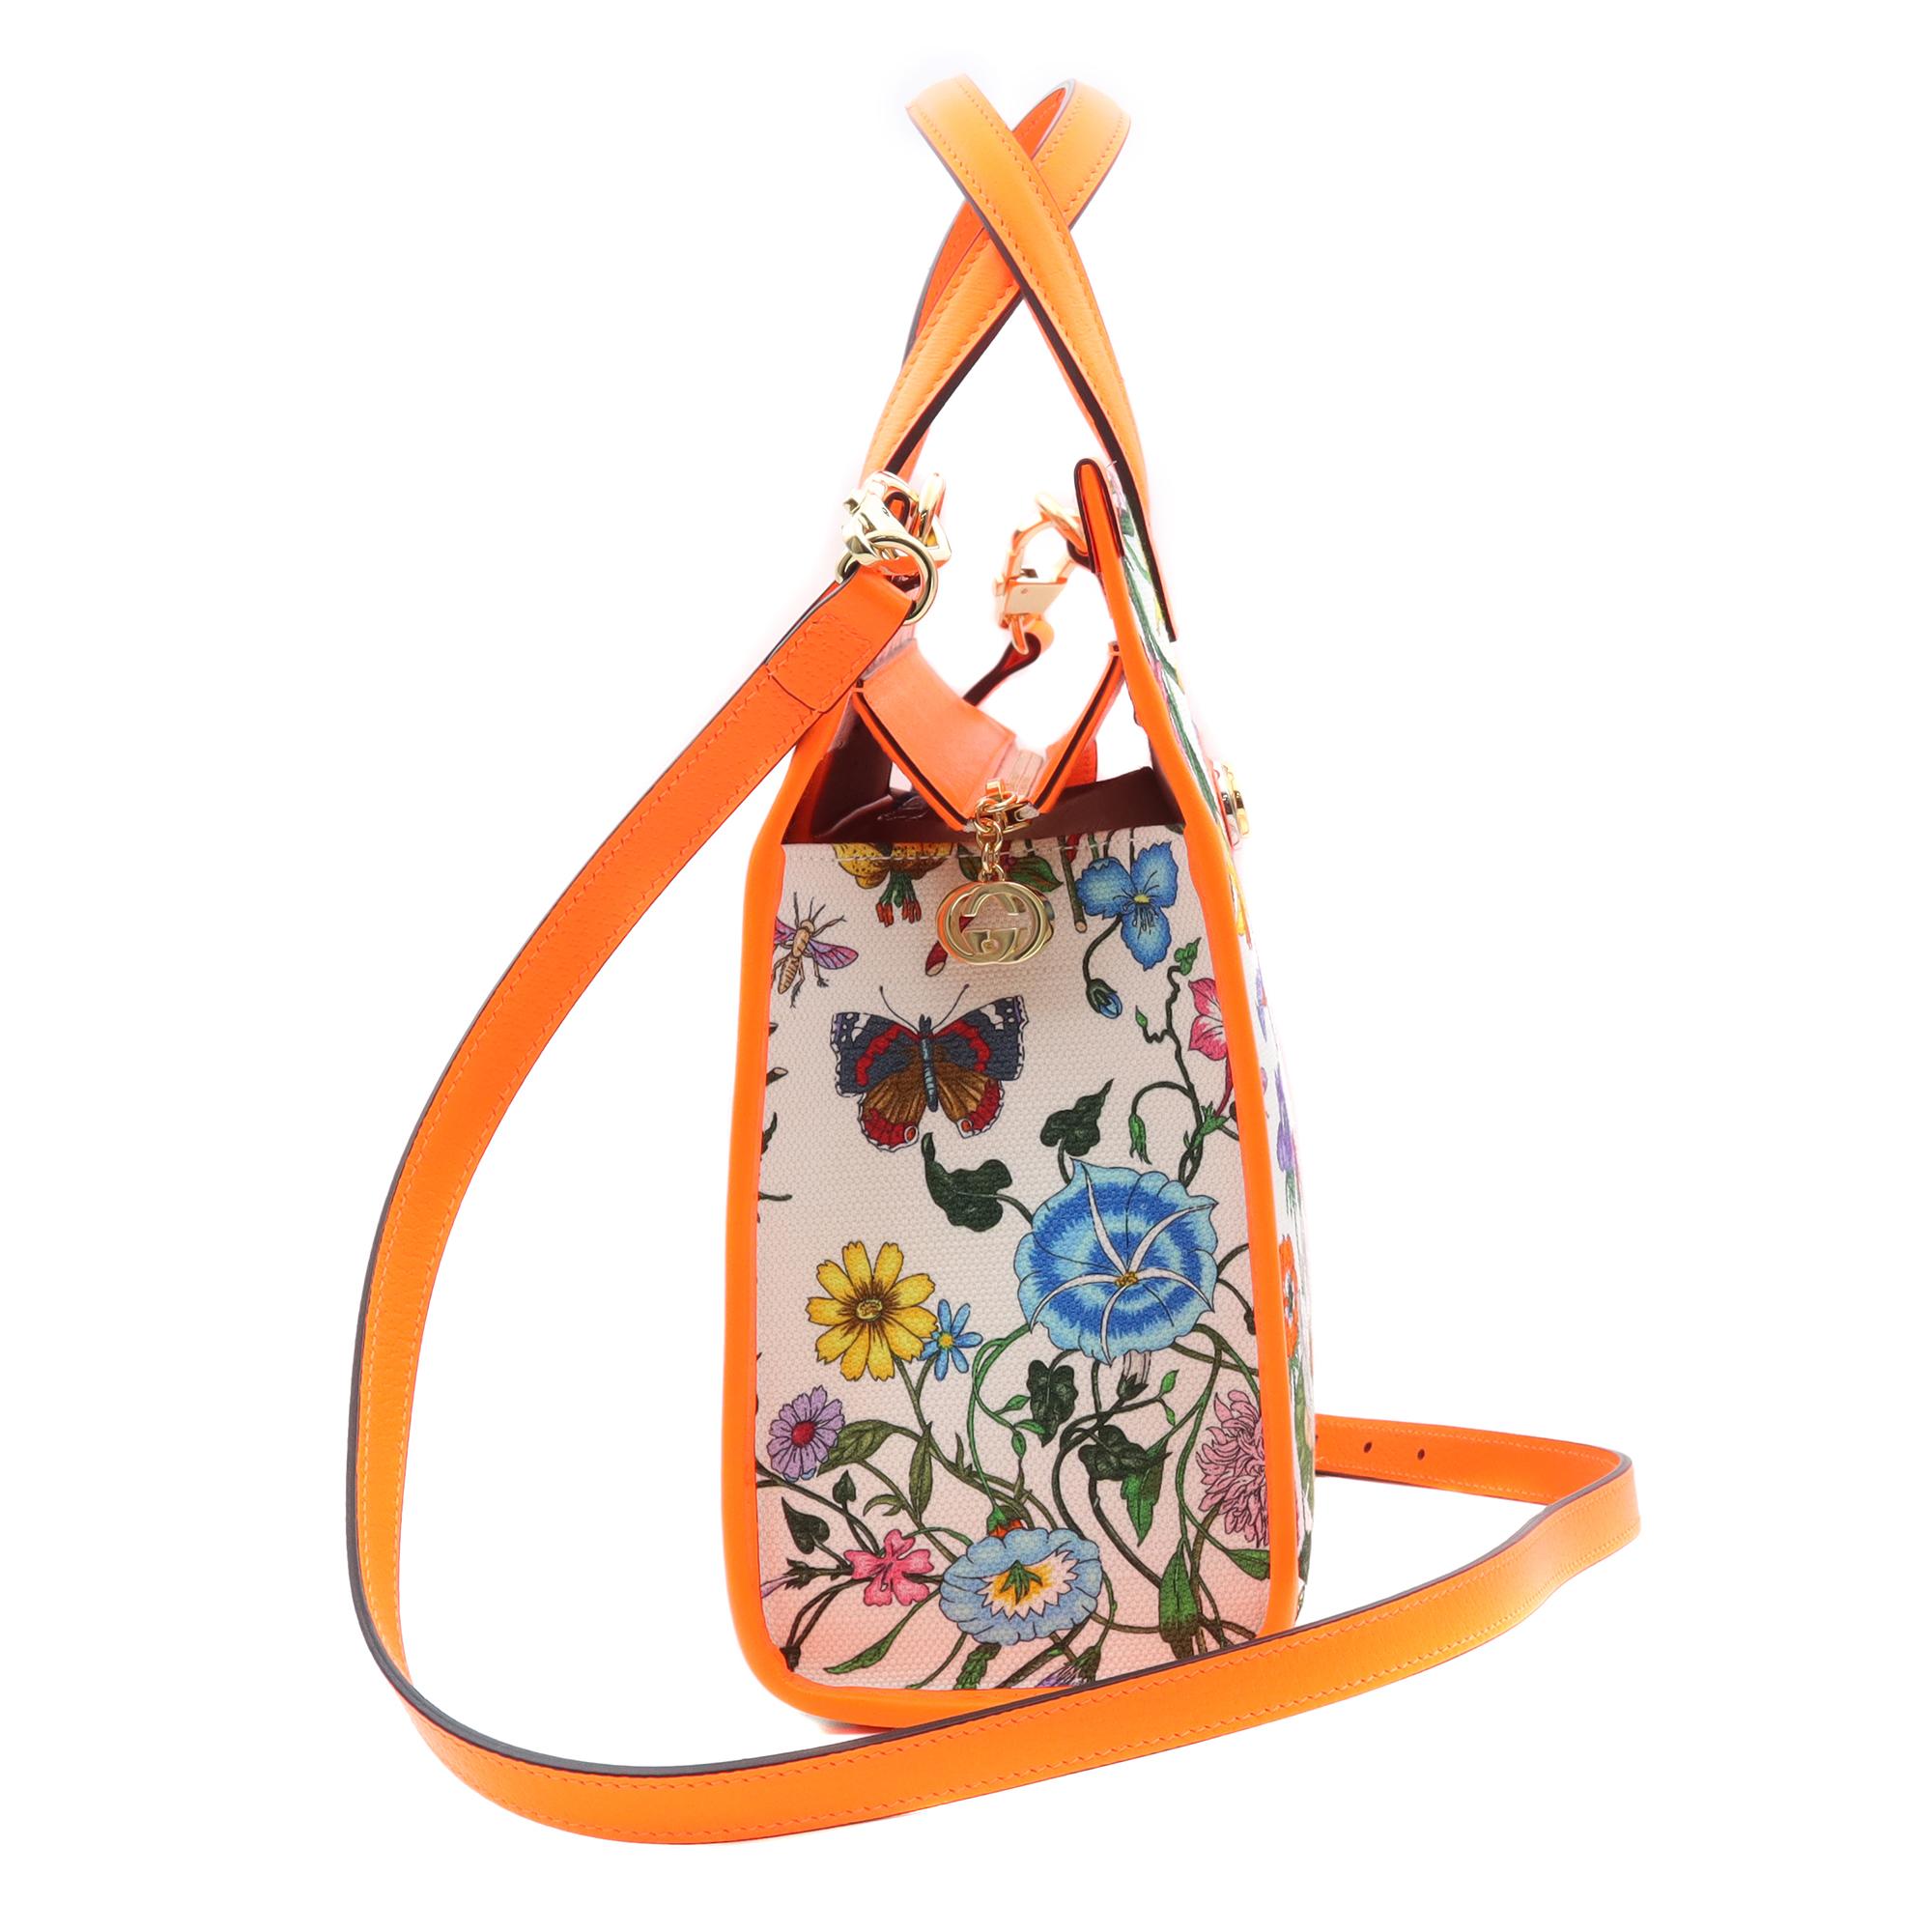 gucci floral print bag